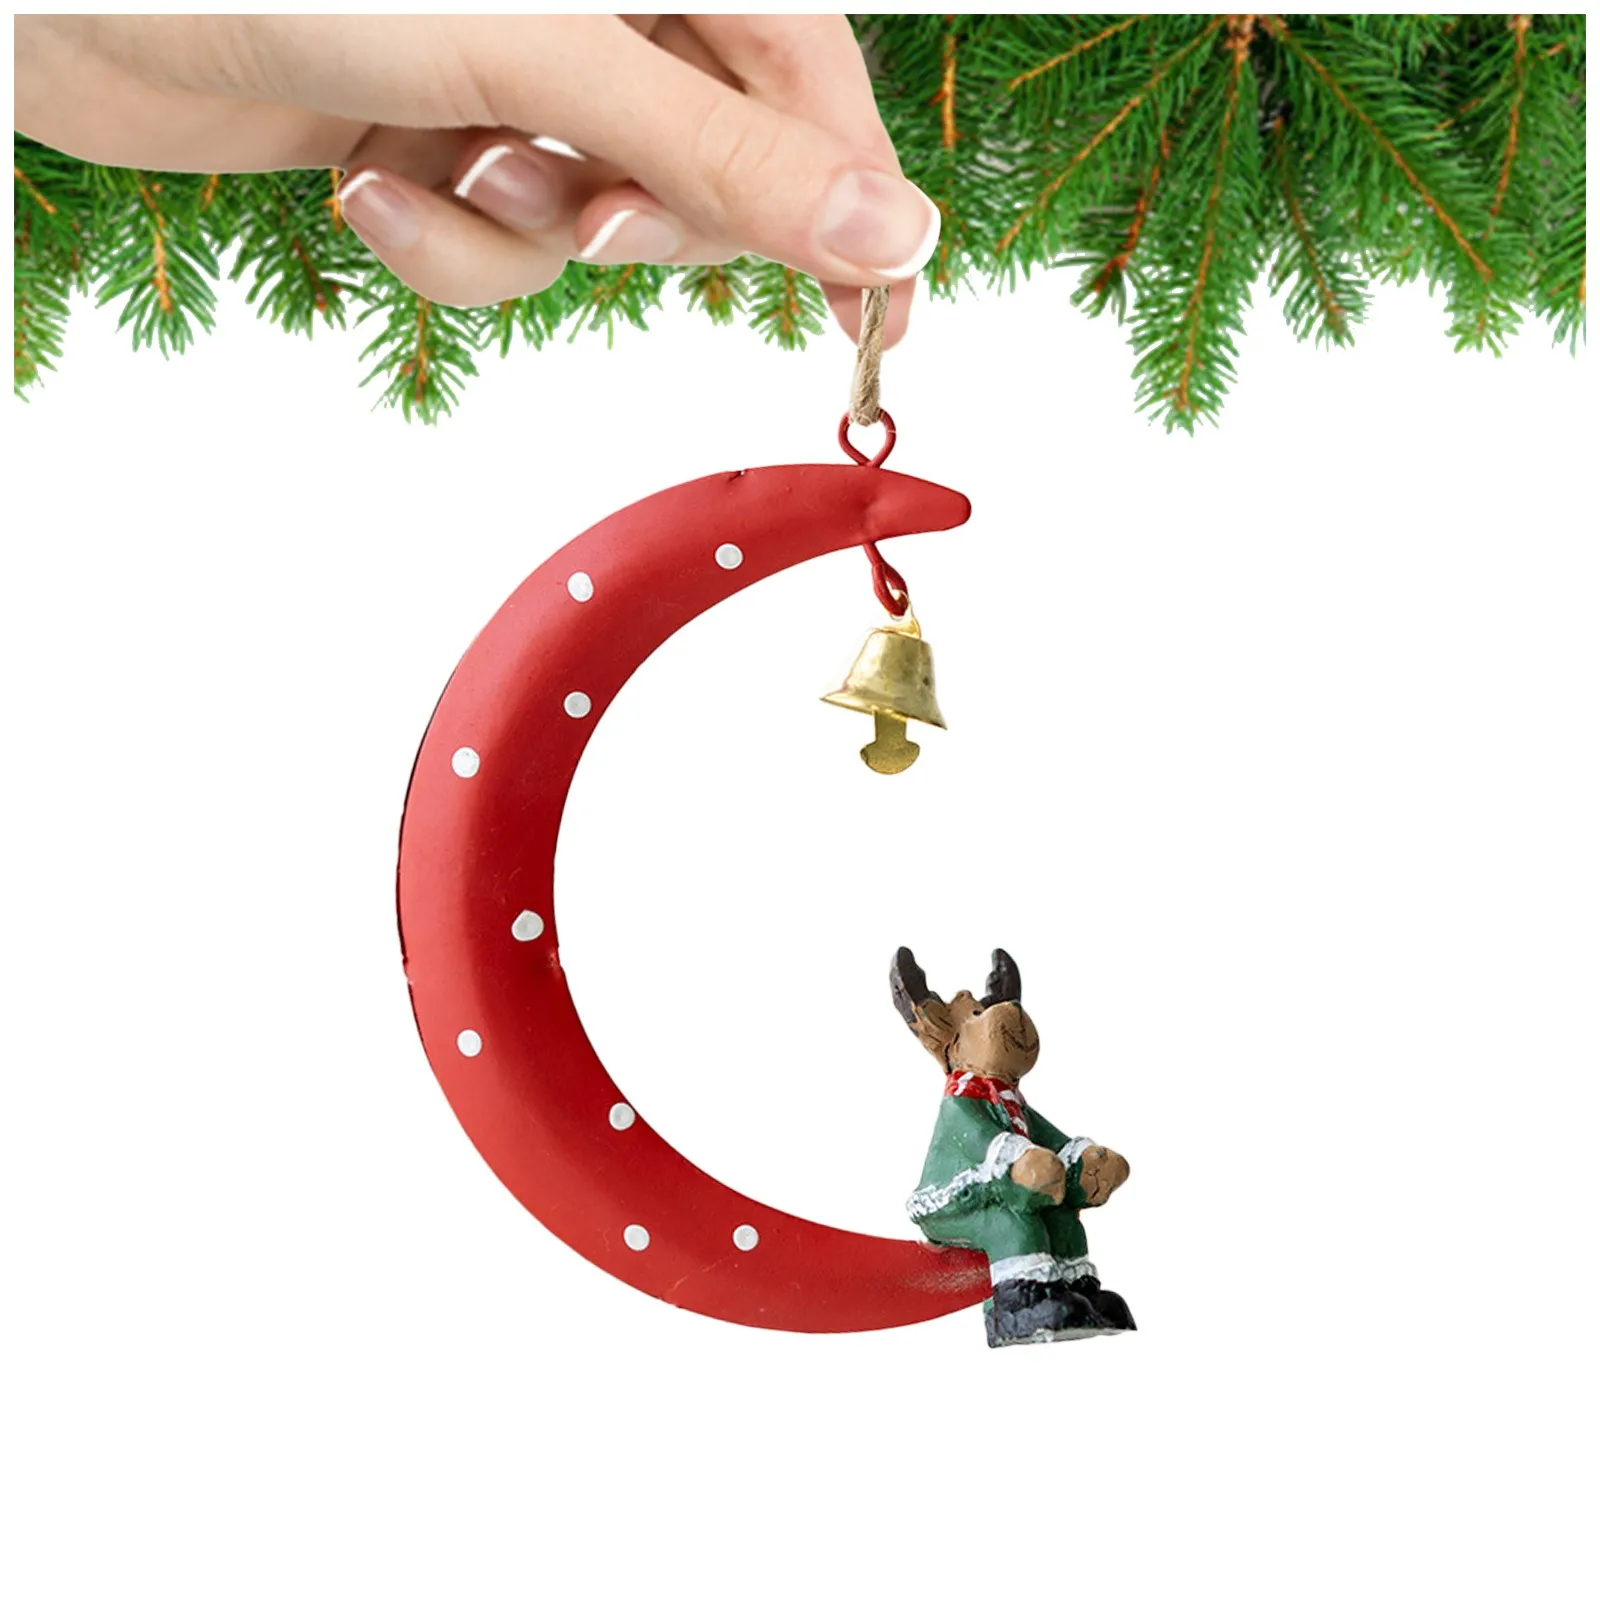 19x Metal Christmas Hanging Ornaments DIY Pendant Christmas Tree Home Decor 